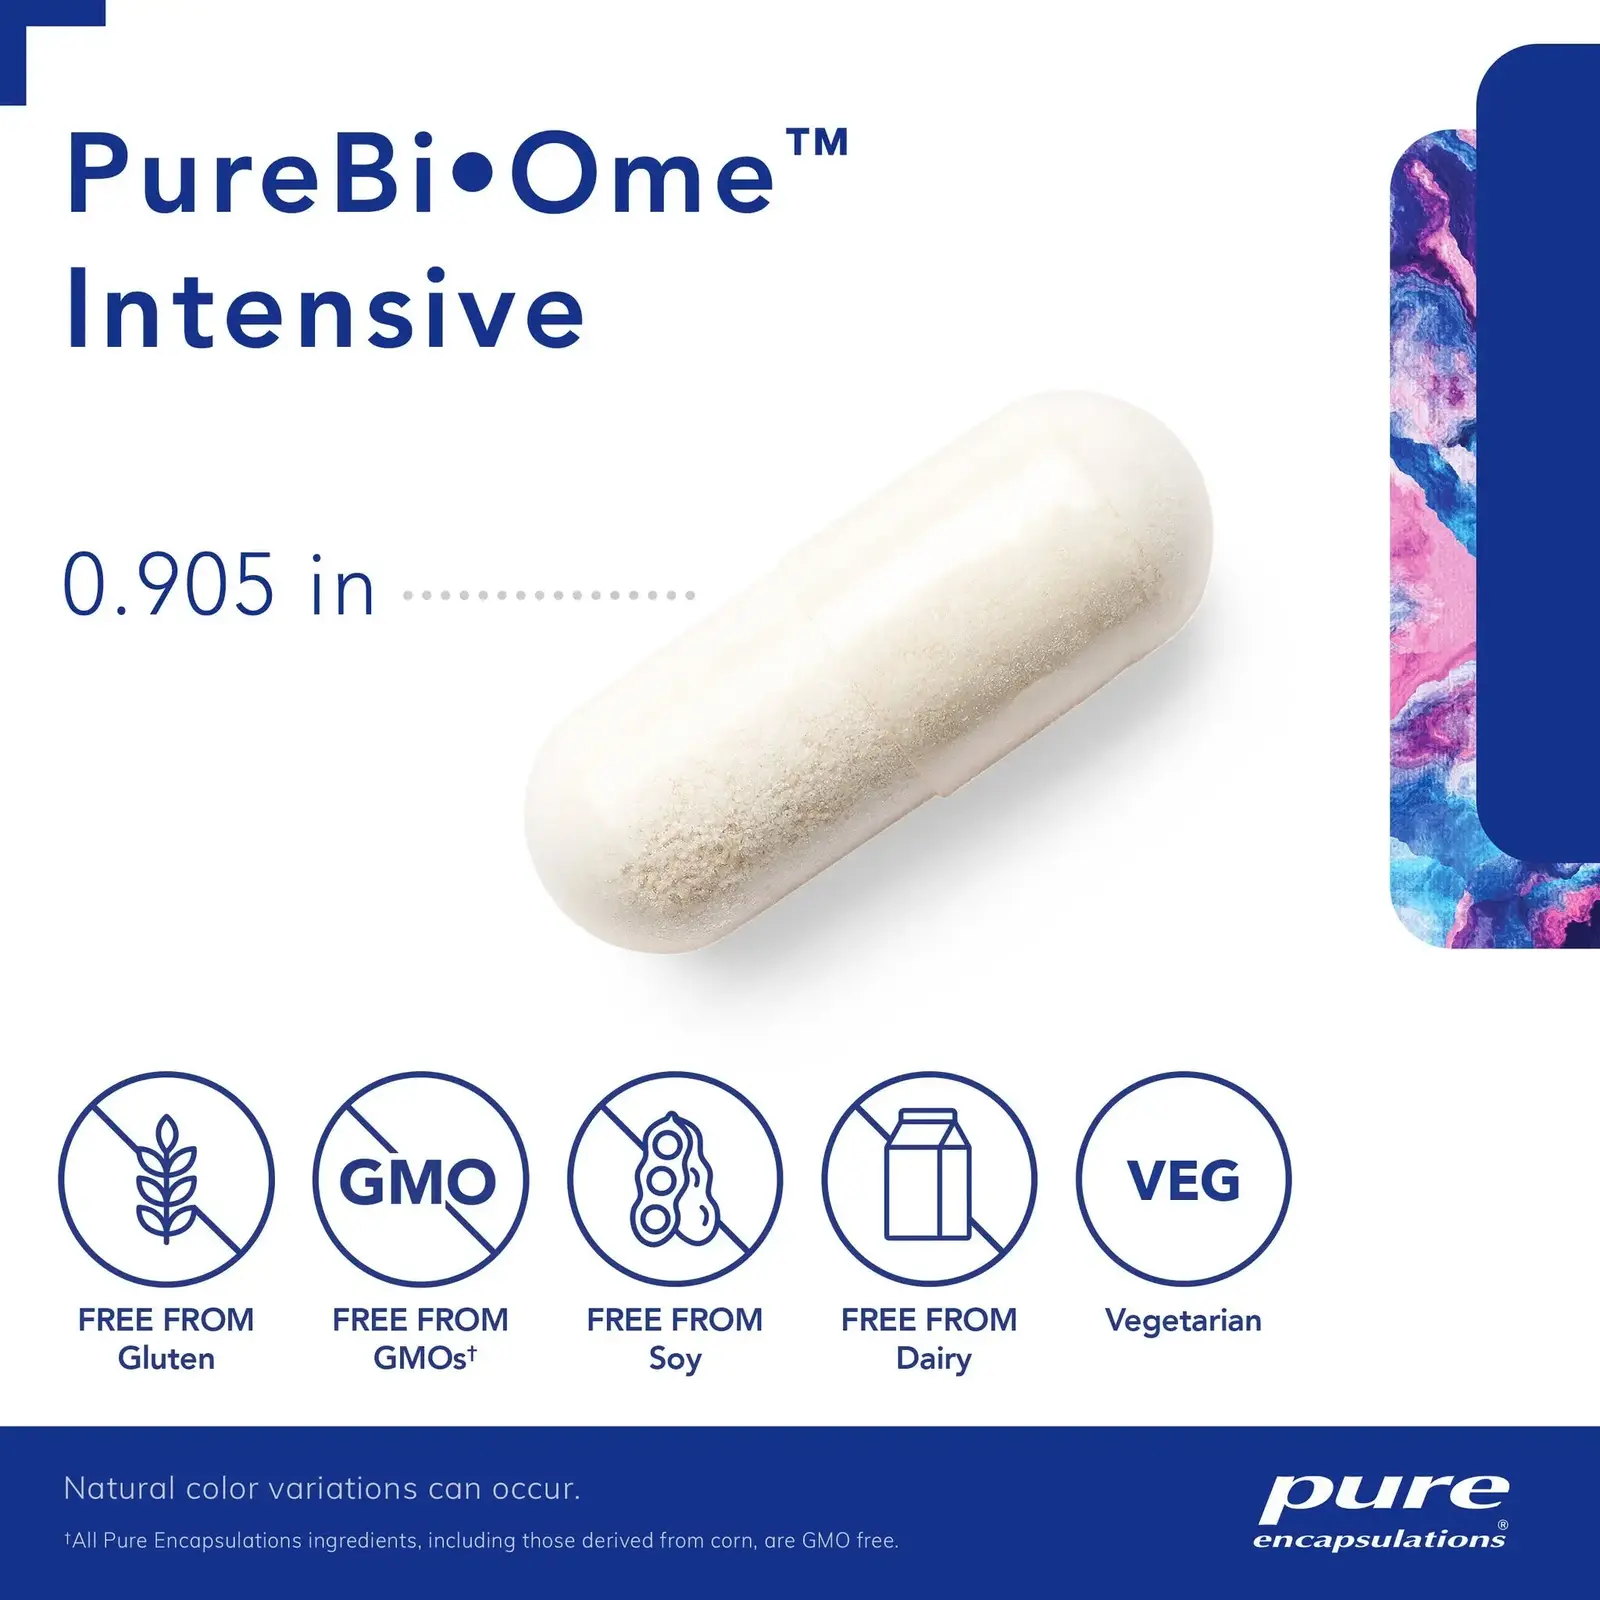 PureBiOme Intensive